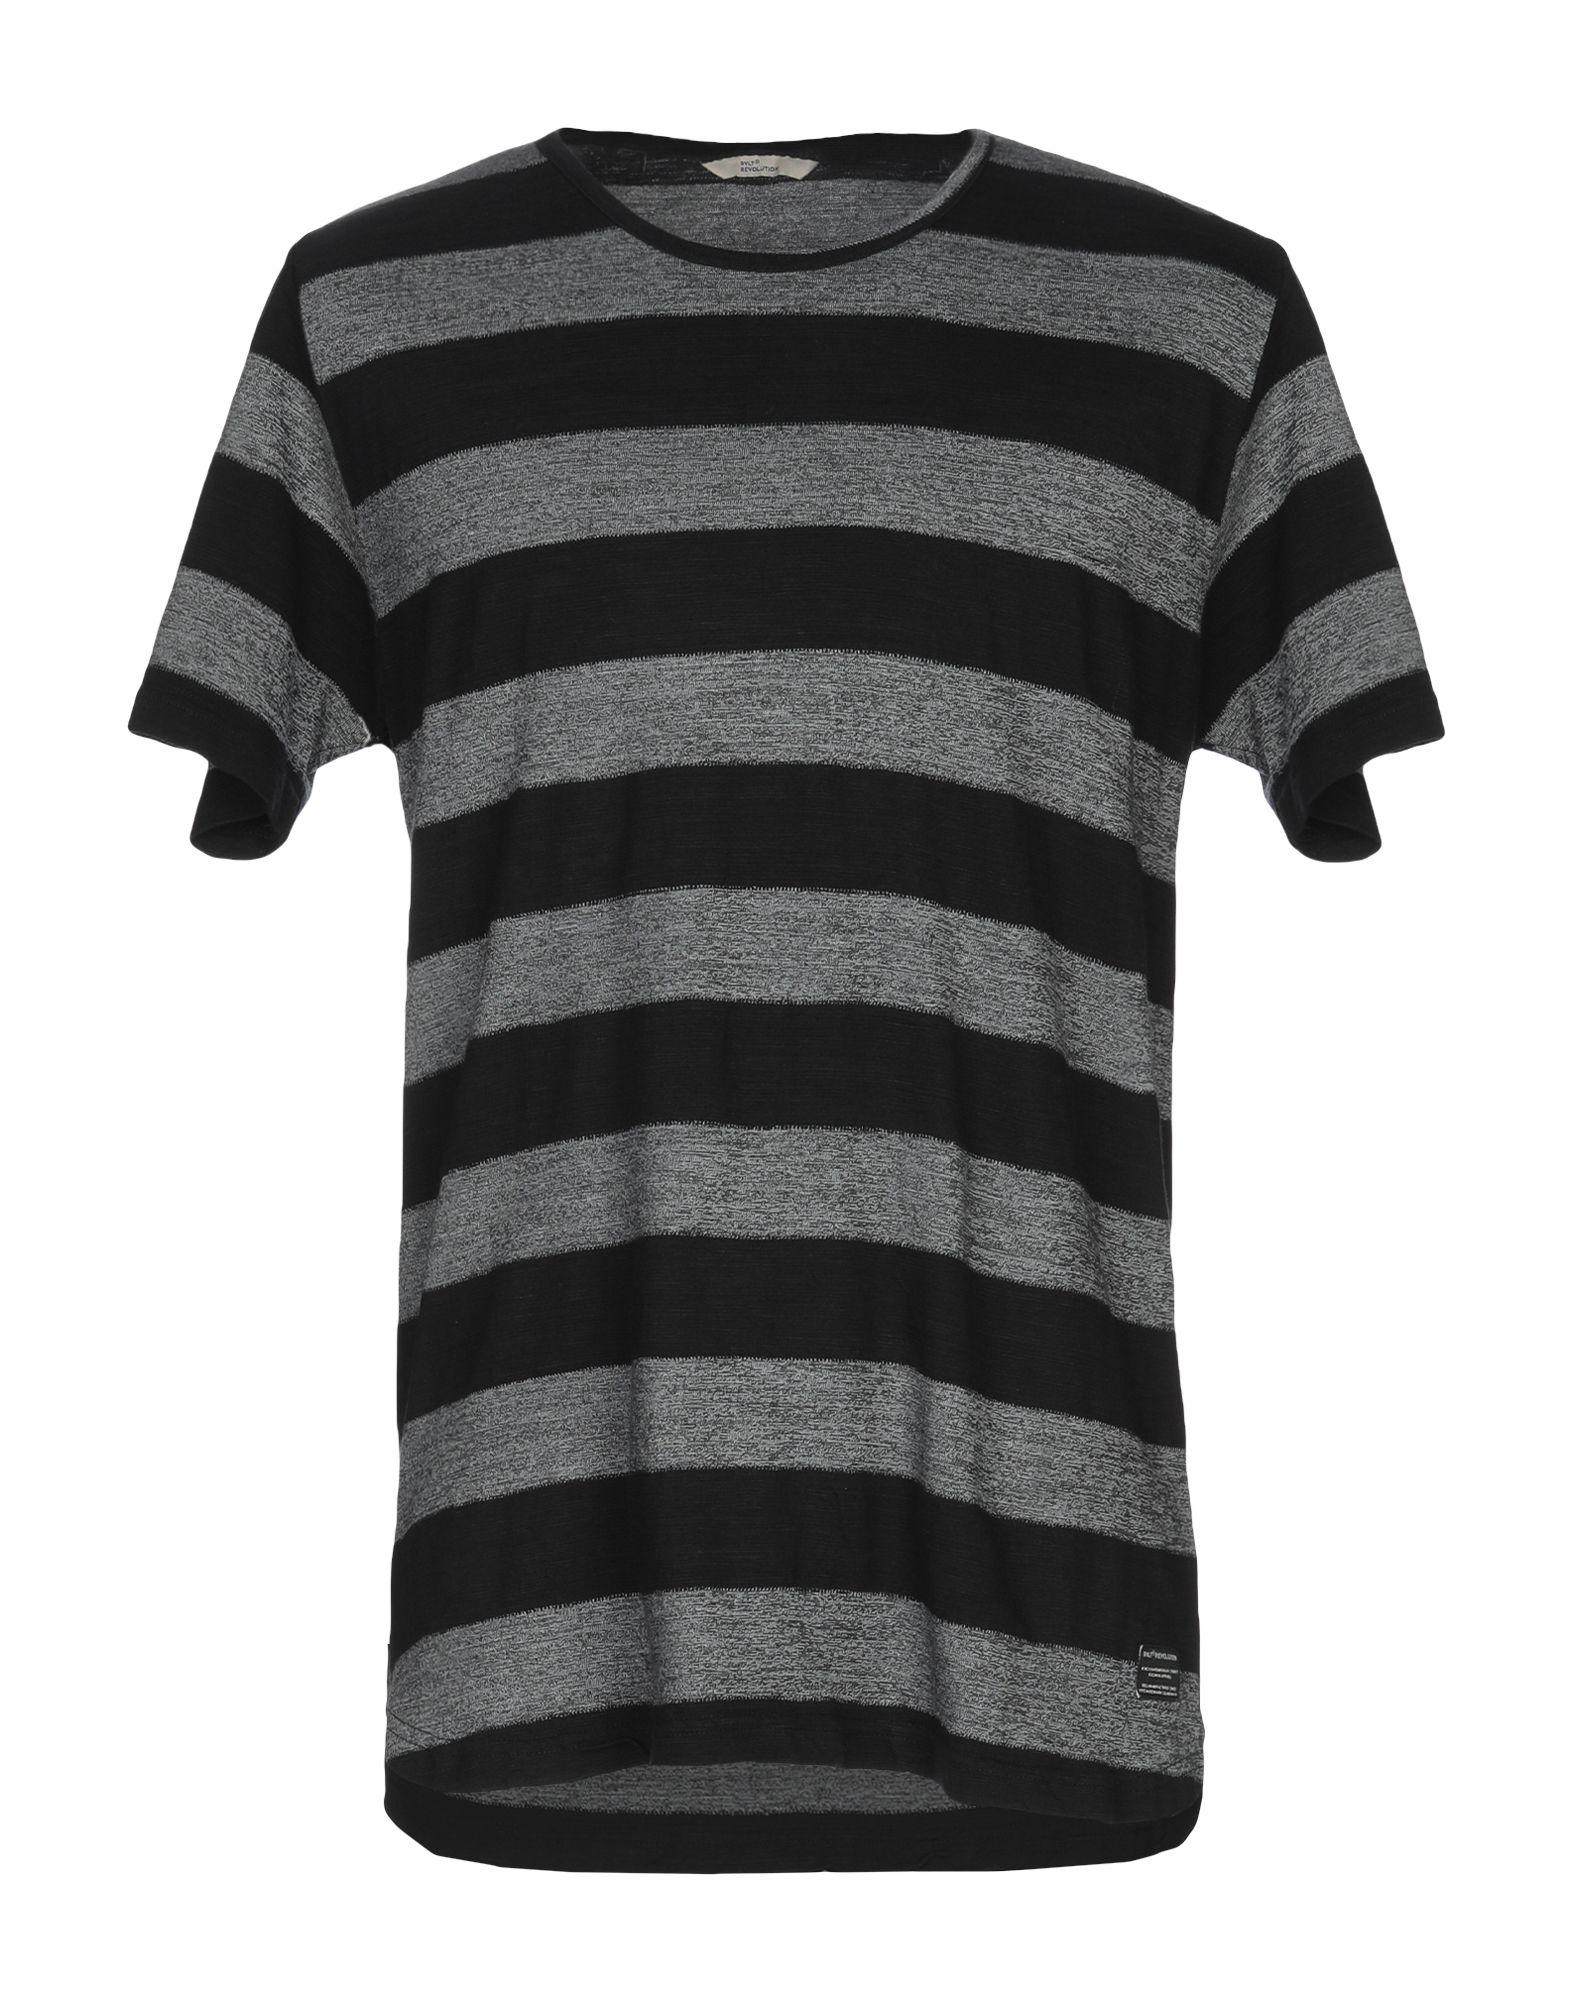 RVLT T-shirt in Gray for Men - Lyst